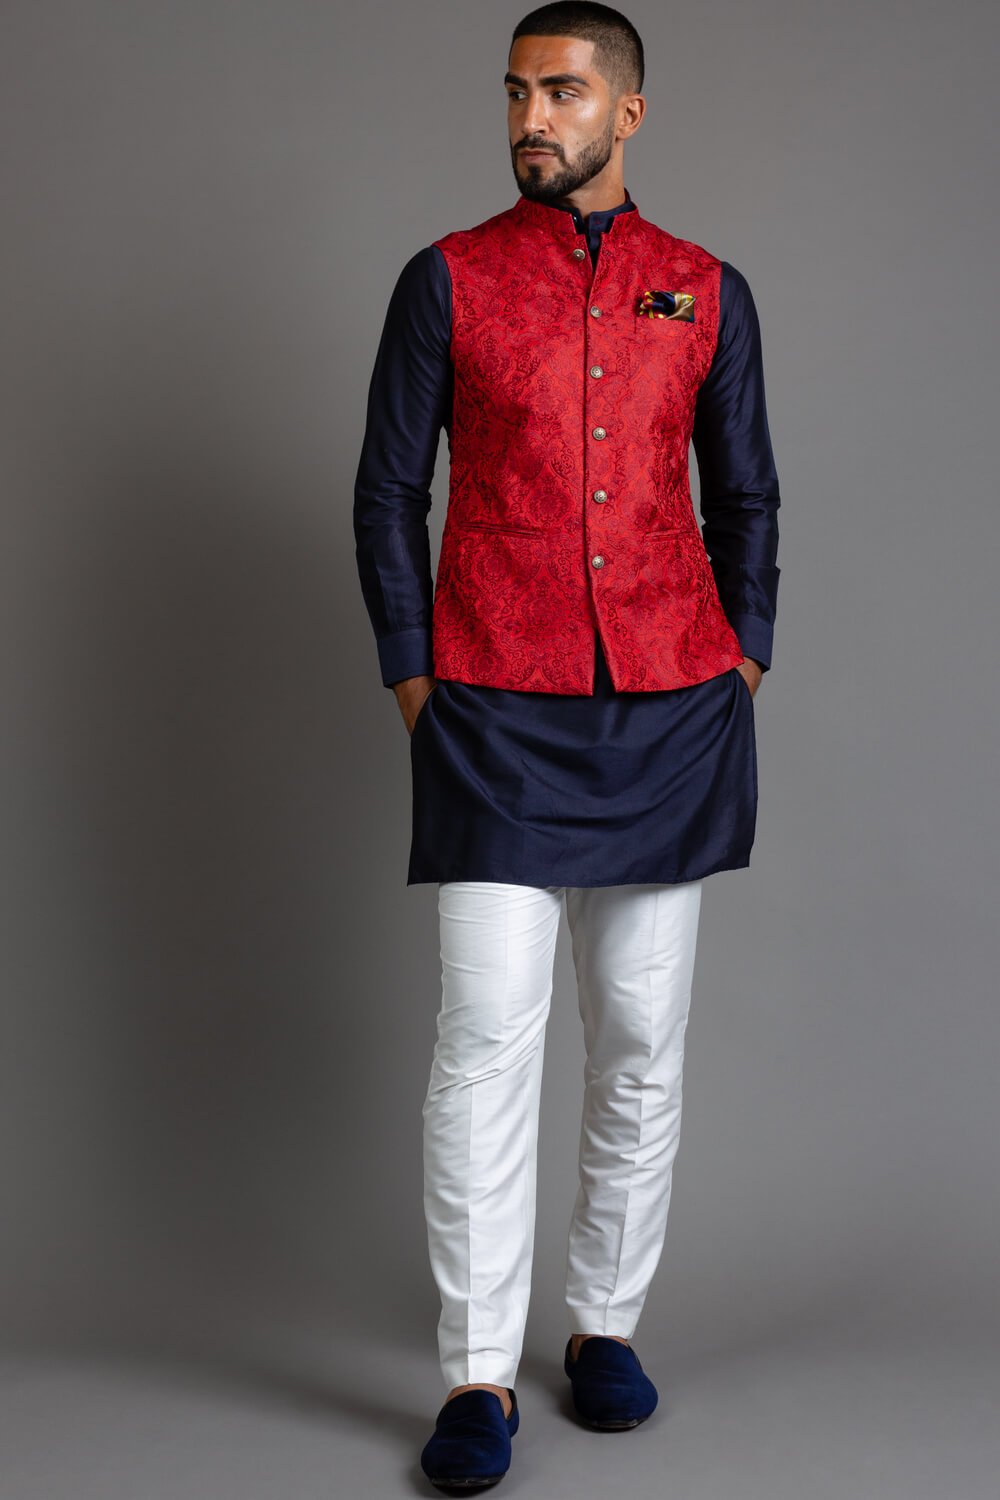 Red Embroidered Nehru Jacket